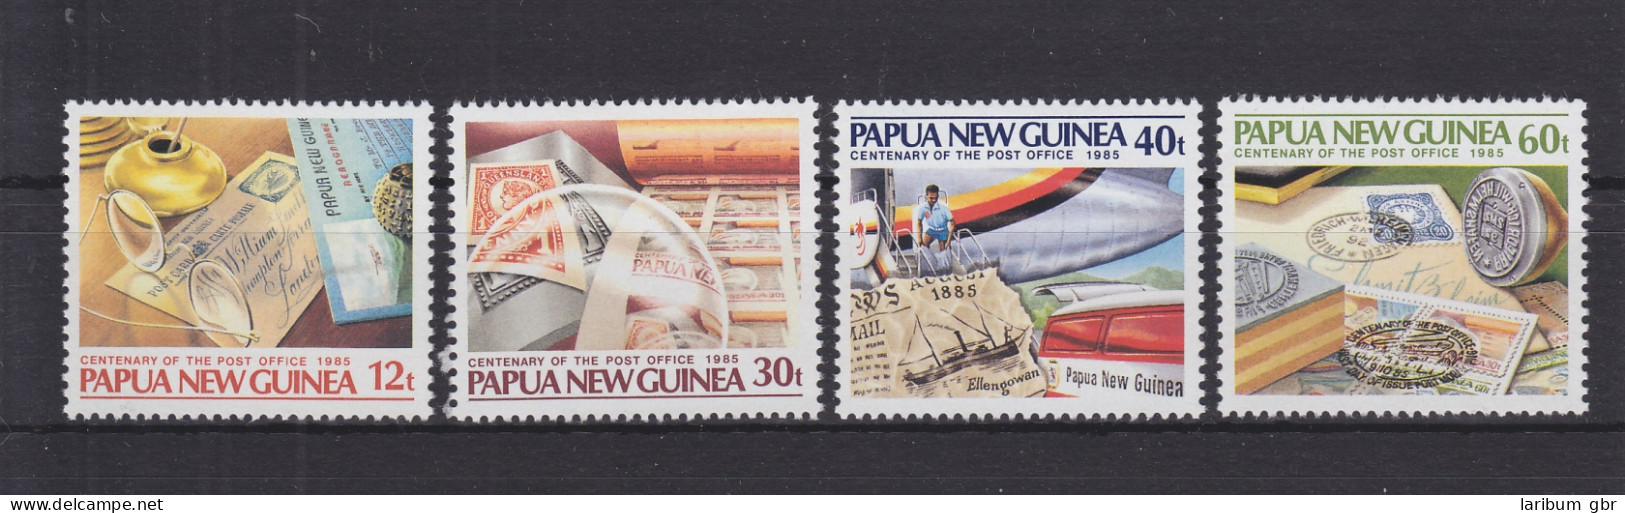 Papua-Neuguinea 504-507 Postfrisch 100 Jahre Postdienst, MNH #GE275 - Papua New Guinea